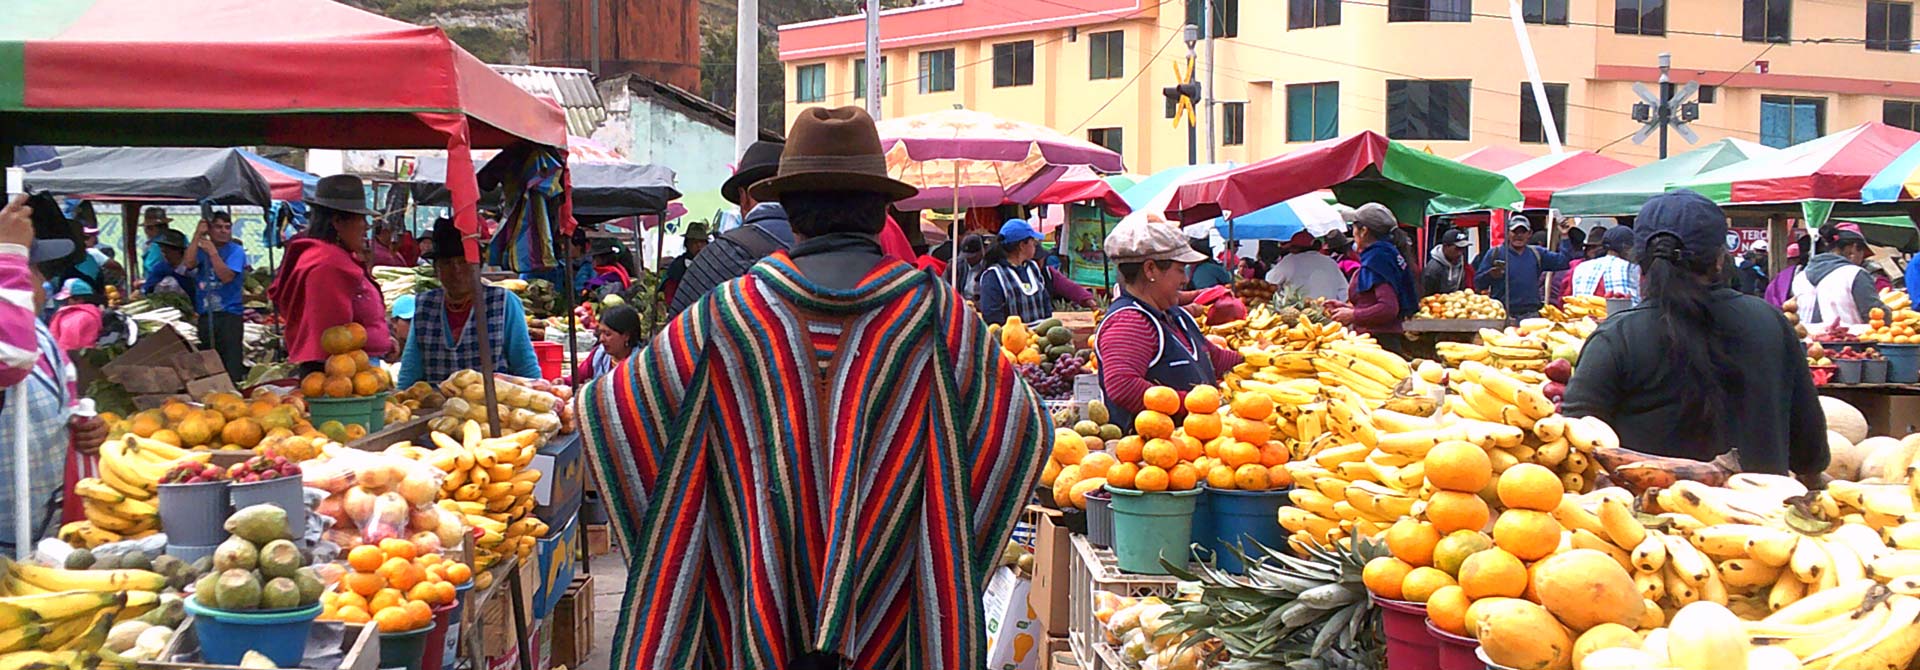 Ecuador Market